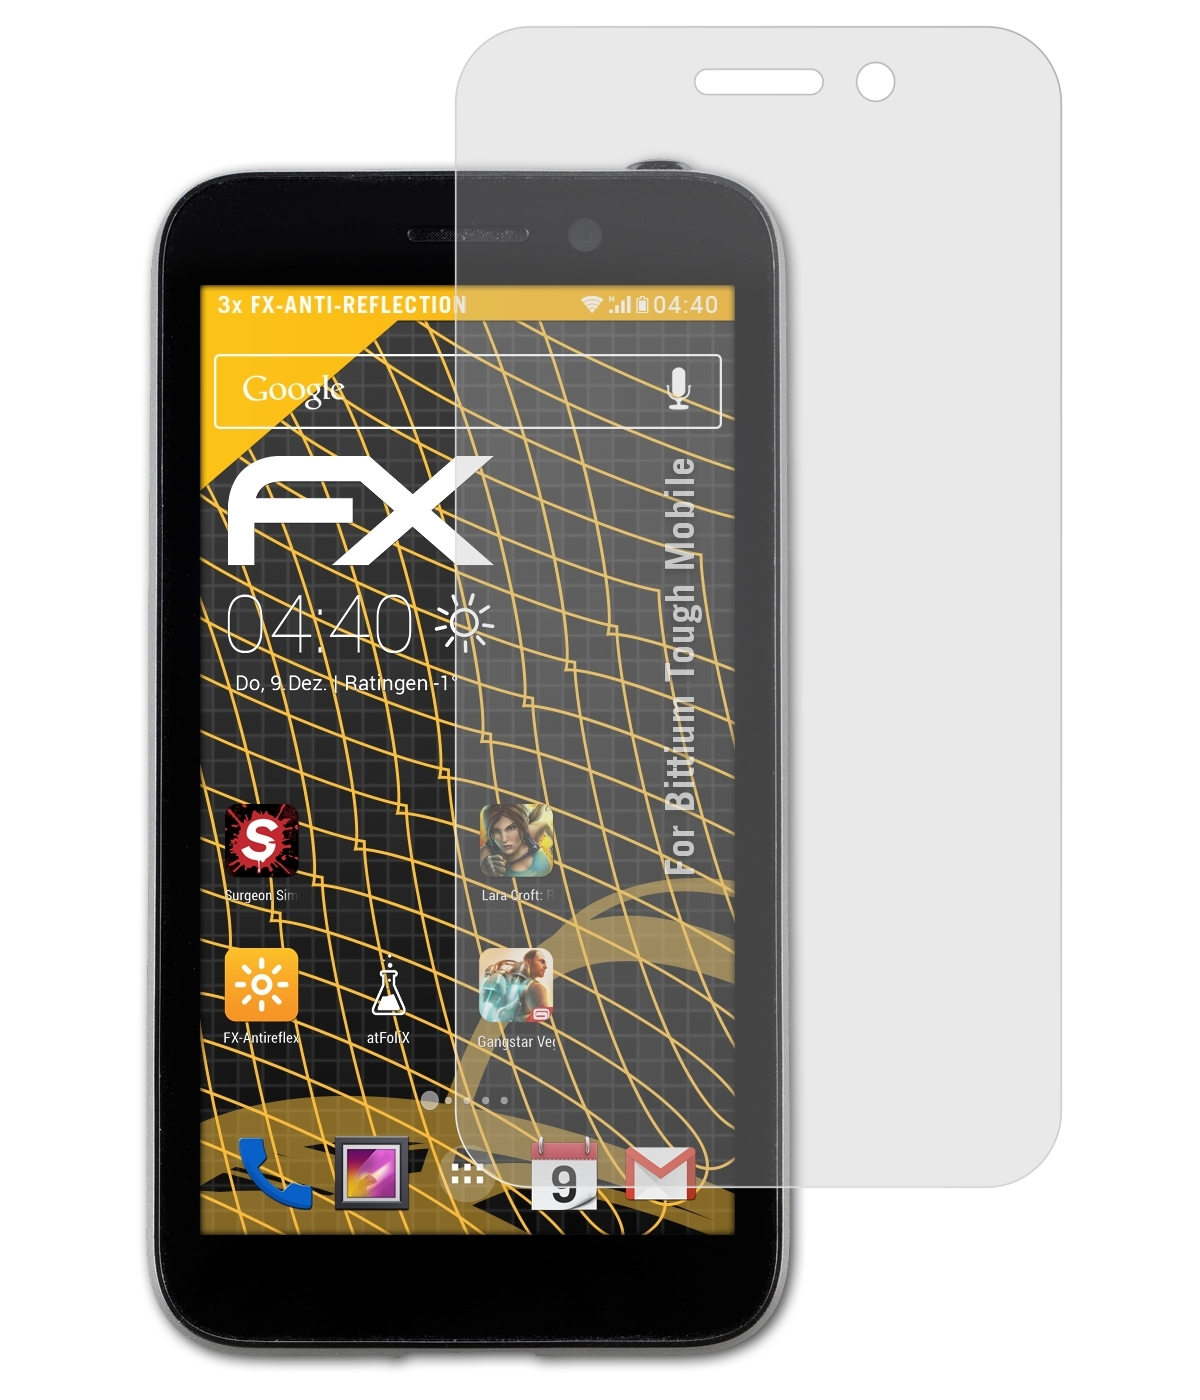 ATFOLIX 3x Bittium Displayschutz(für Tough Mobile) FX-Antireflex